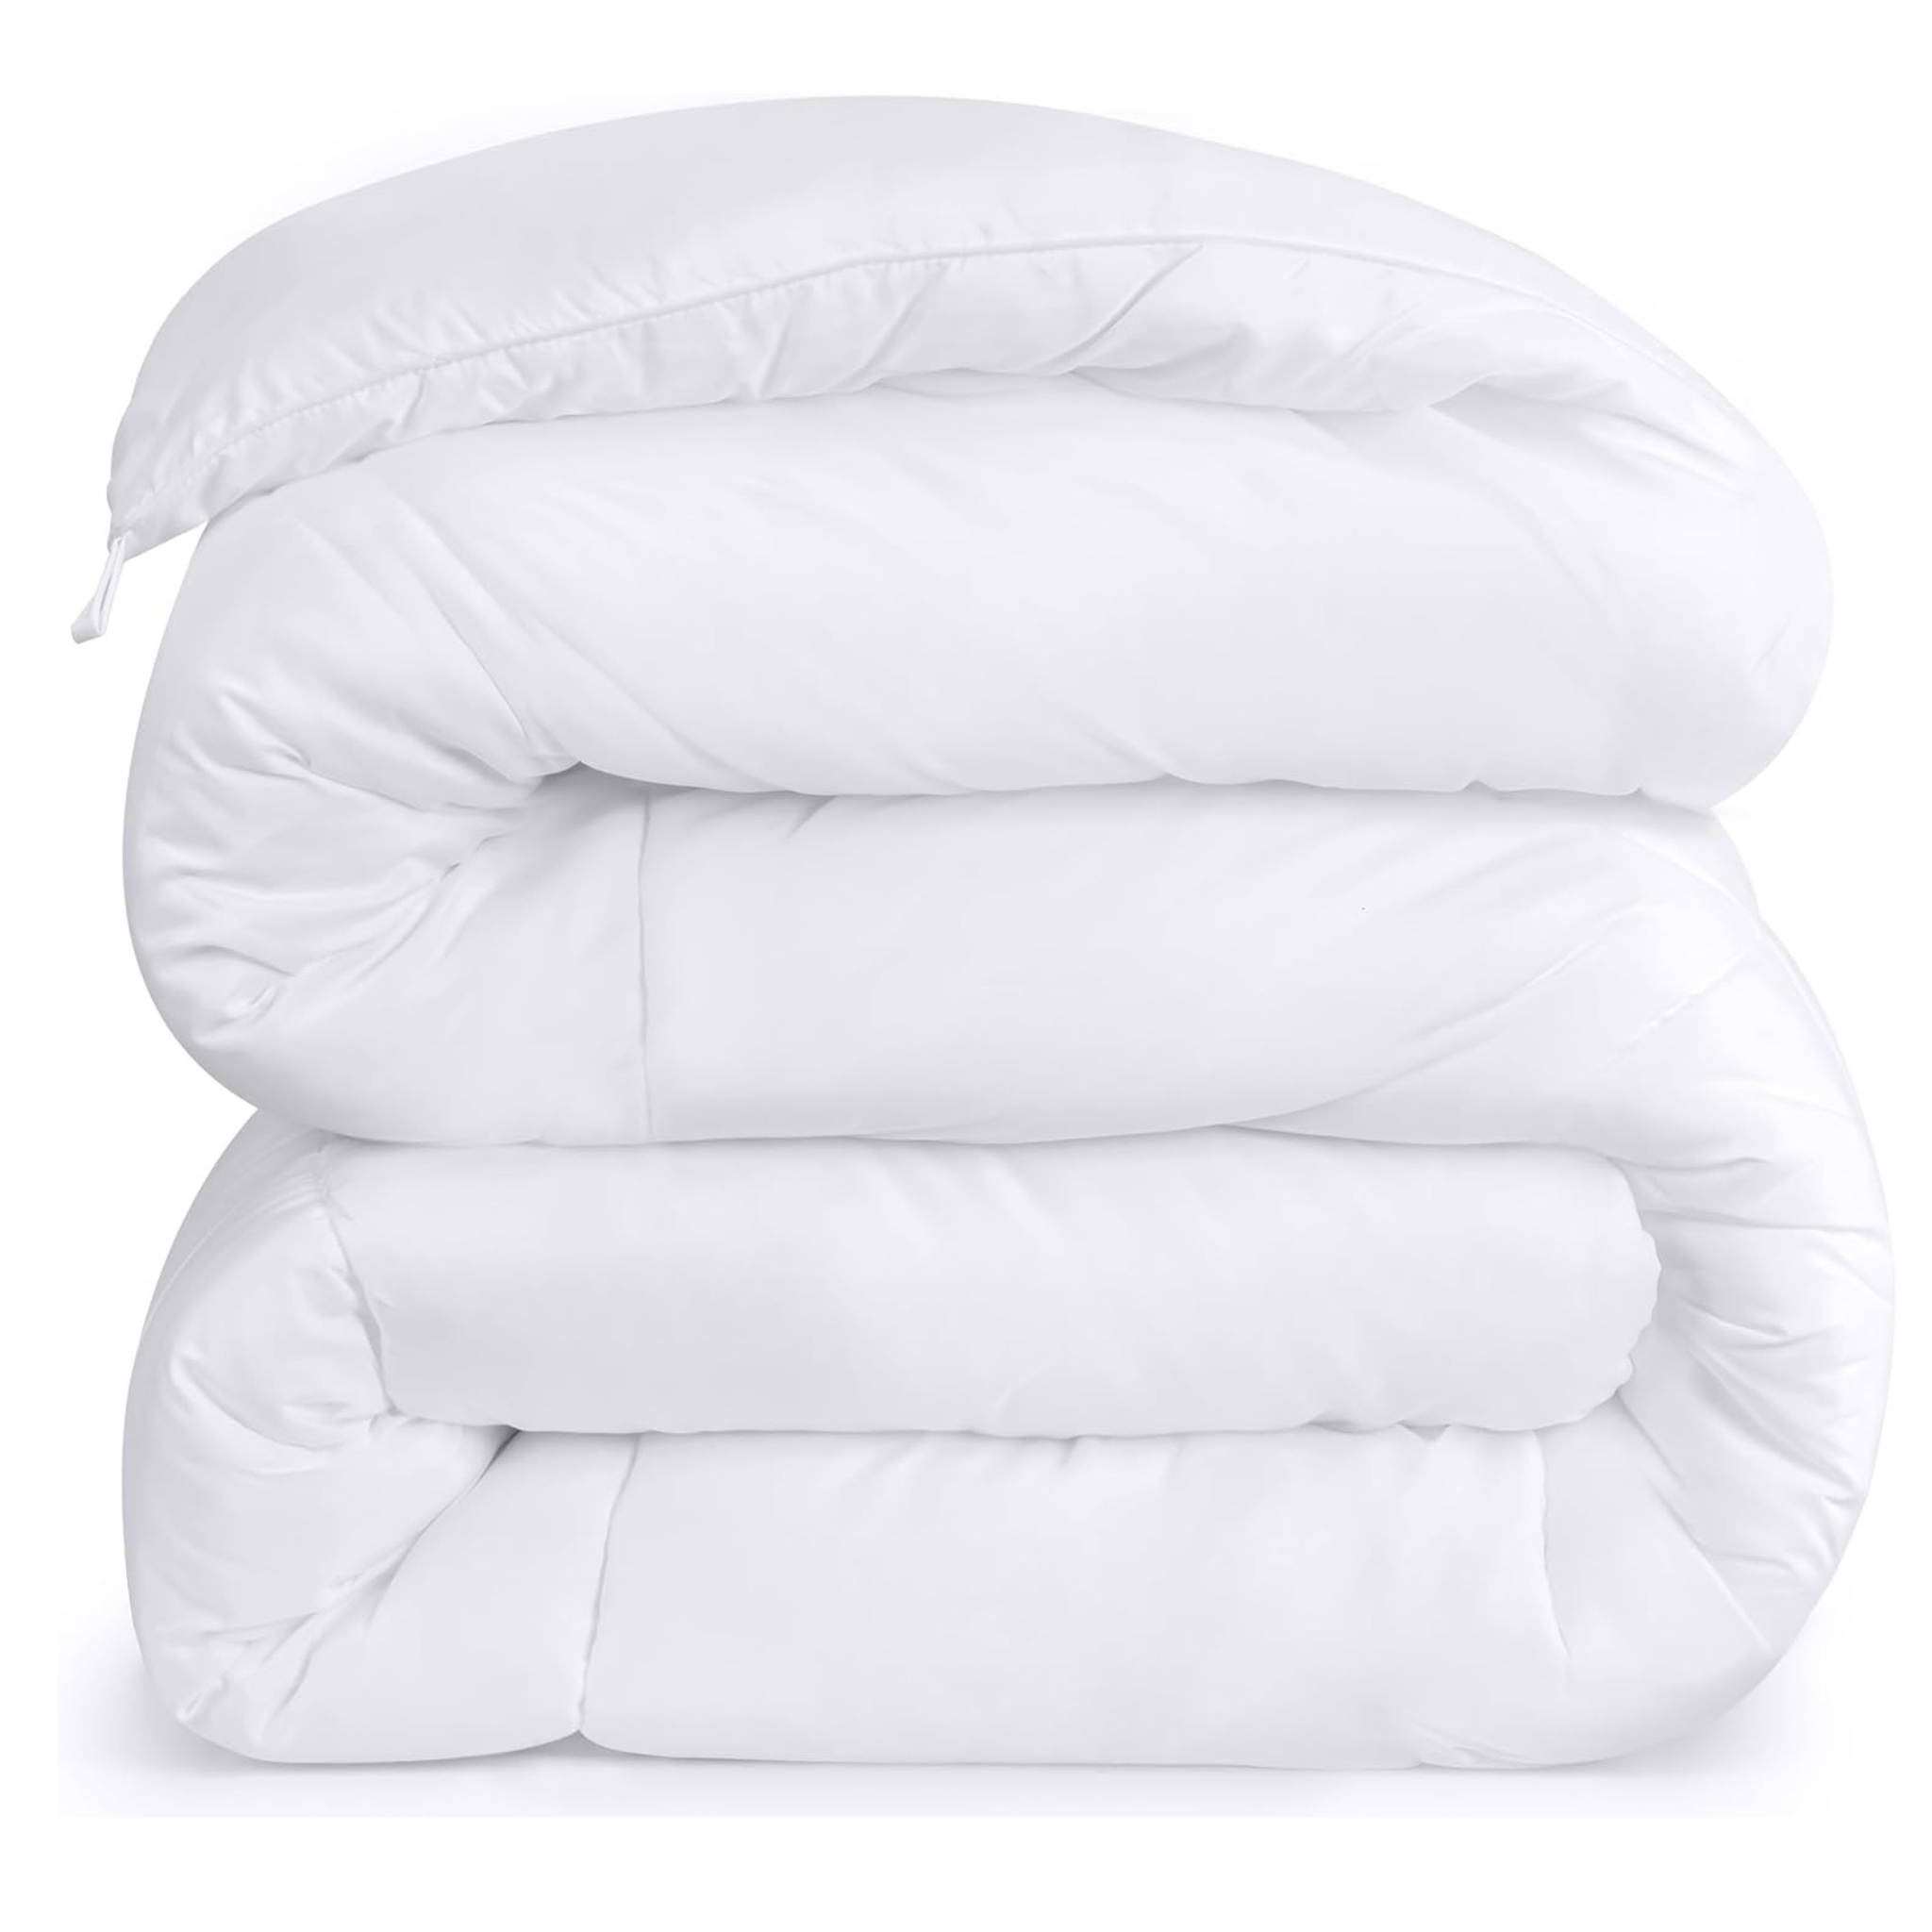 Utopia Bedding Down Alternative Twin Size All Season Comforter